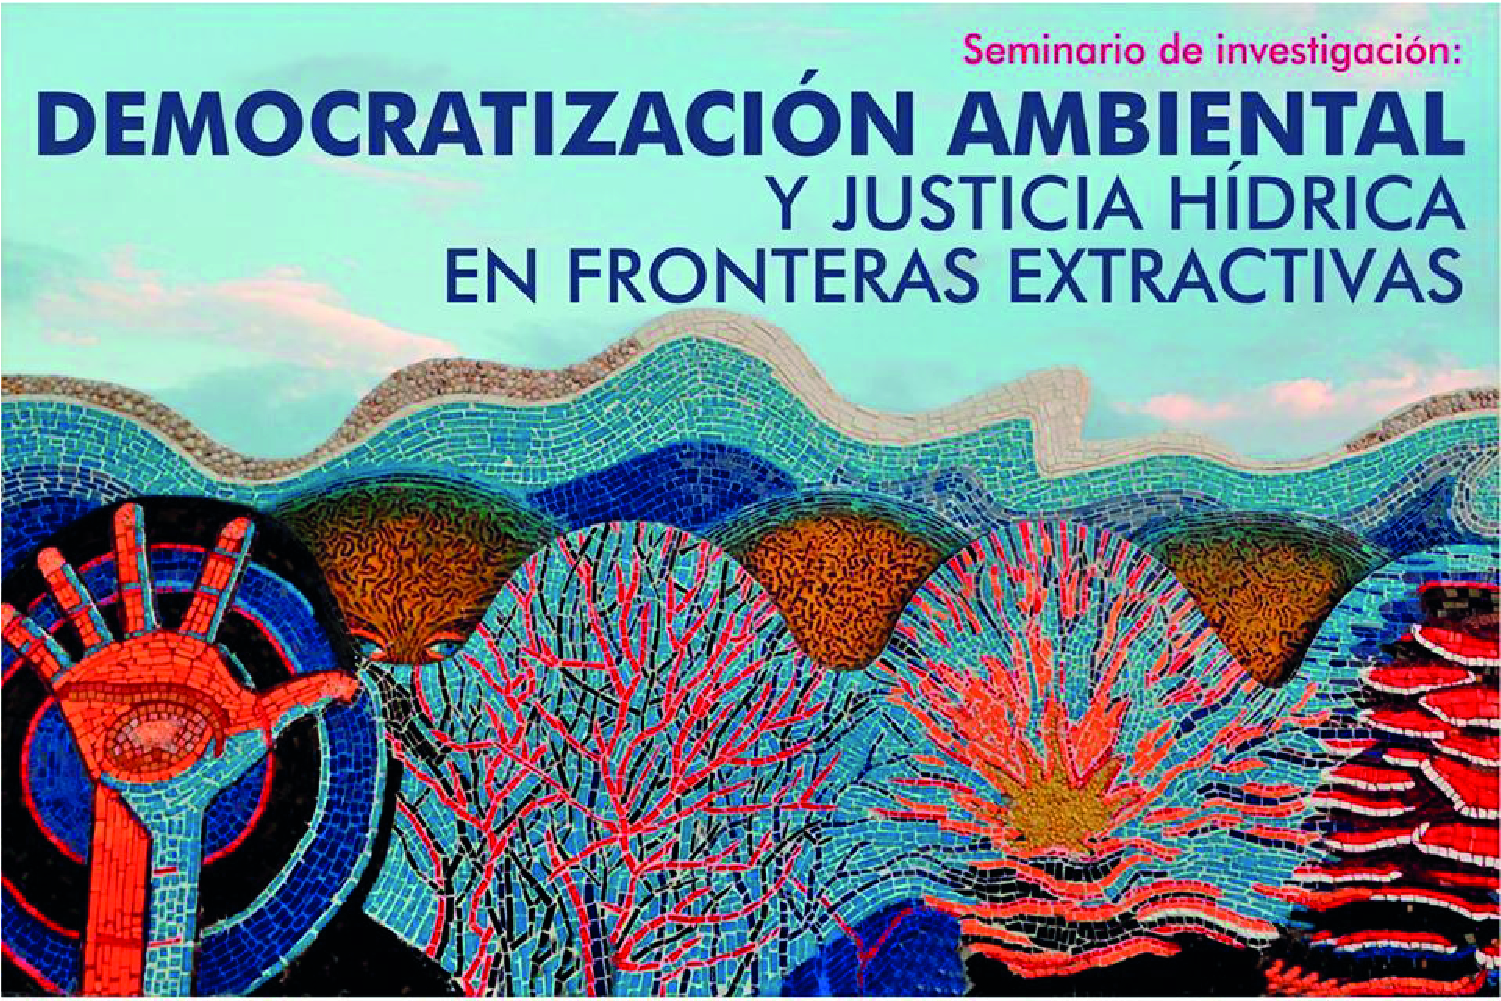 Democratización ambiental y justicia hídrica en fronteras extractivas. - Cider | Uniandes